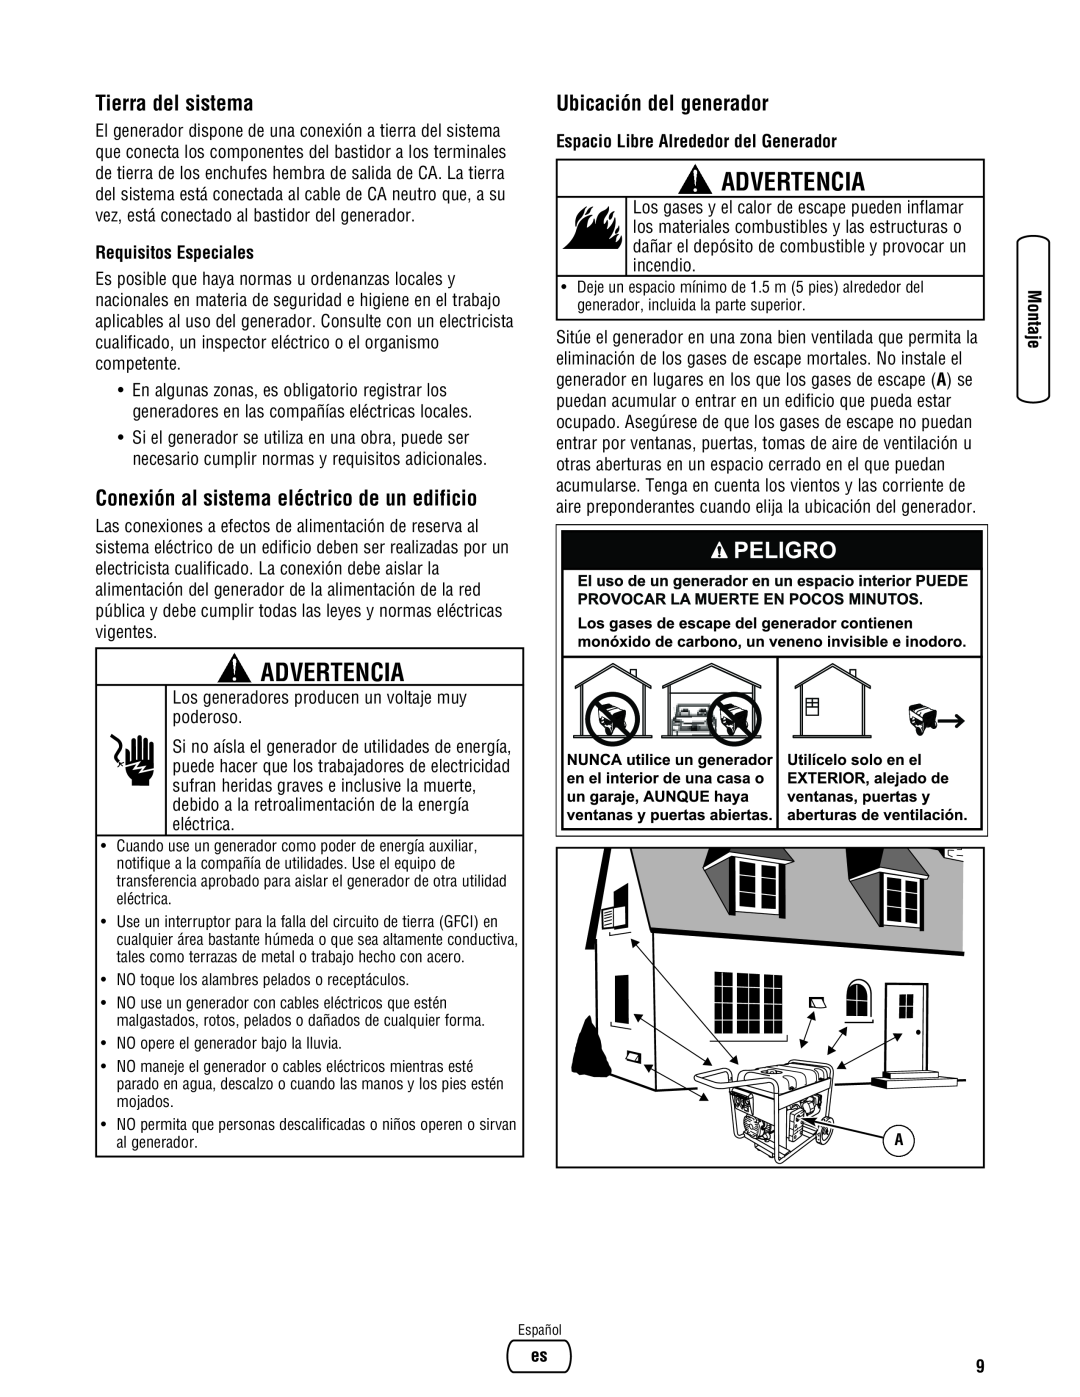 Briggs & Stratton Portable Generator manual Advertencia, Tierra del sistema, Conexión al sistema eléctrico de un edificio 